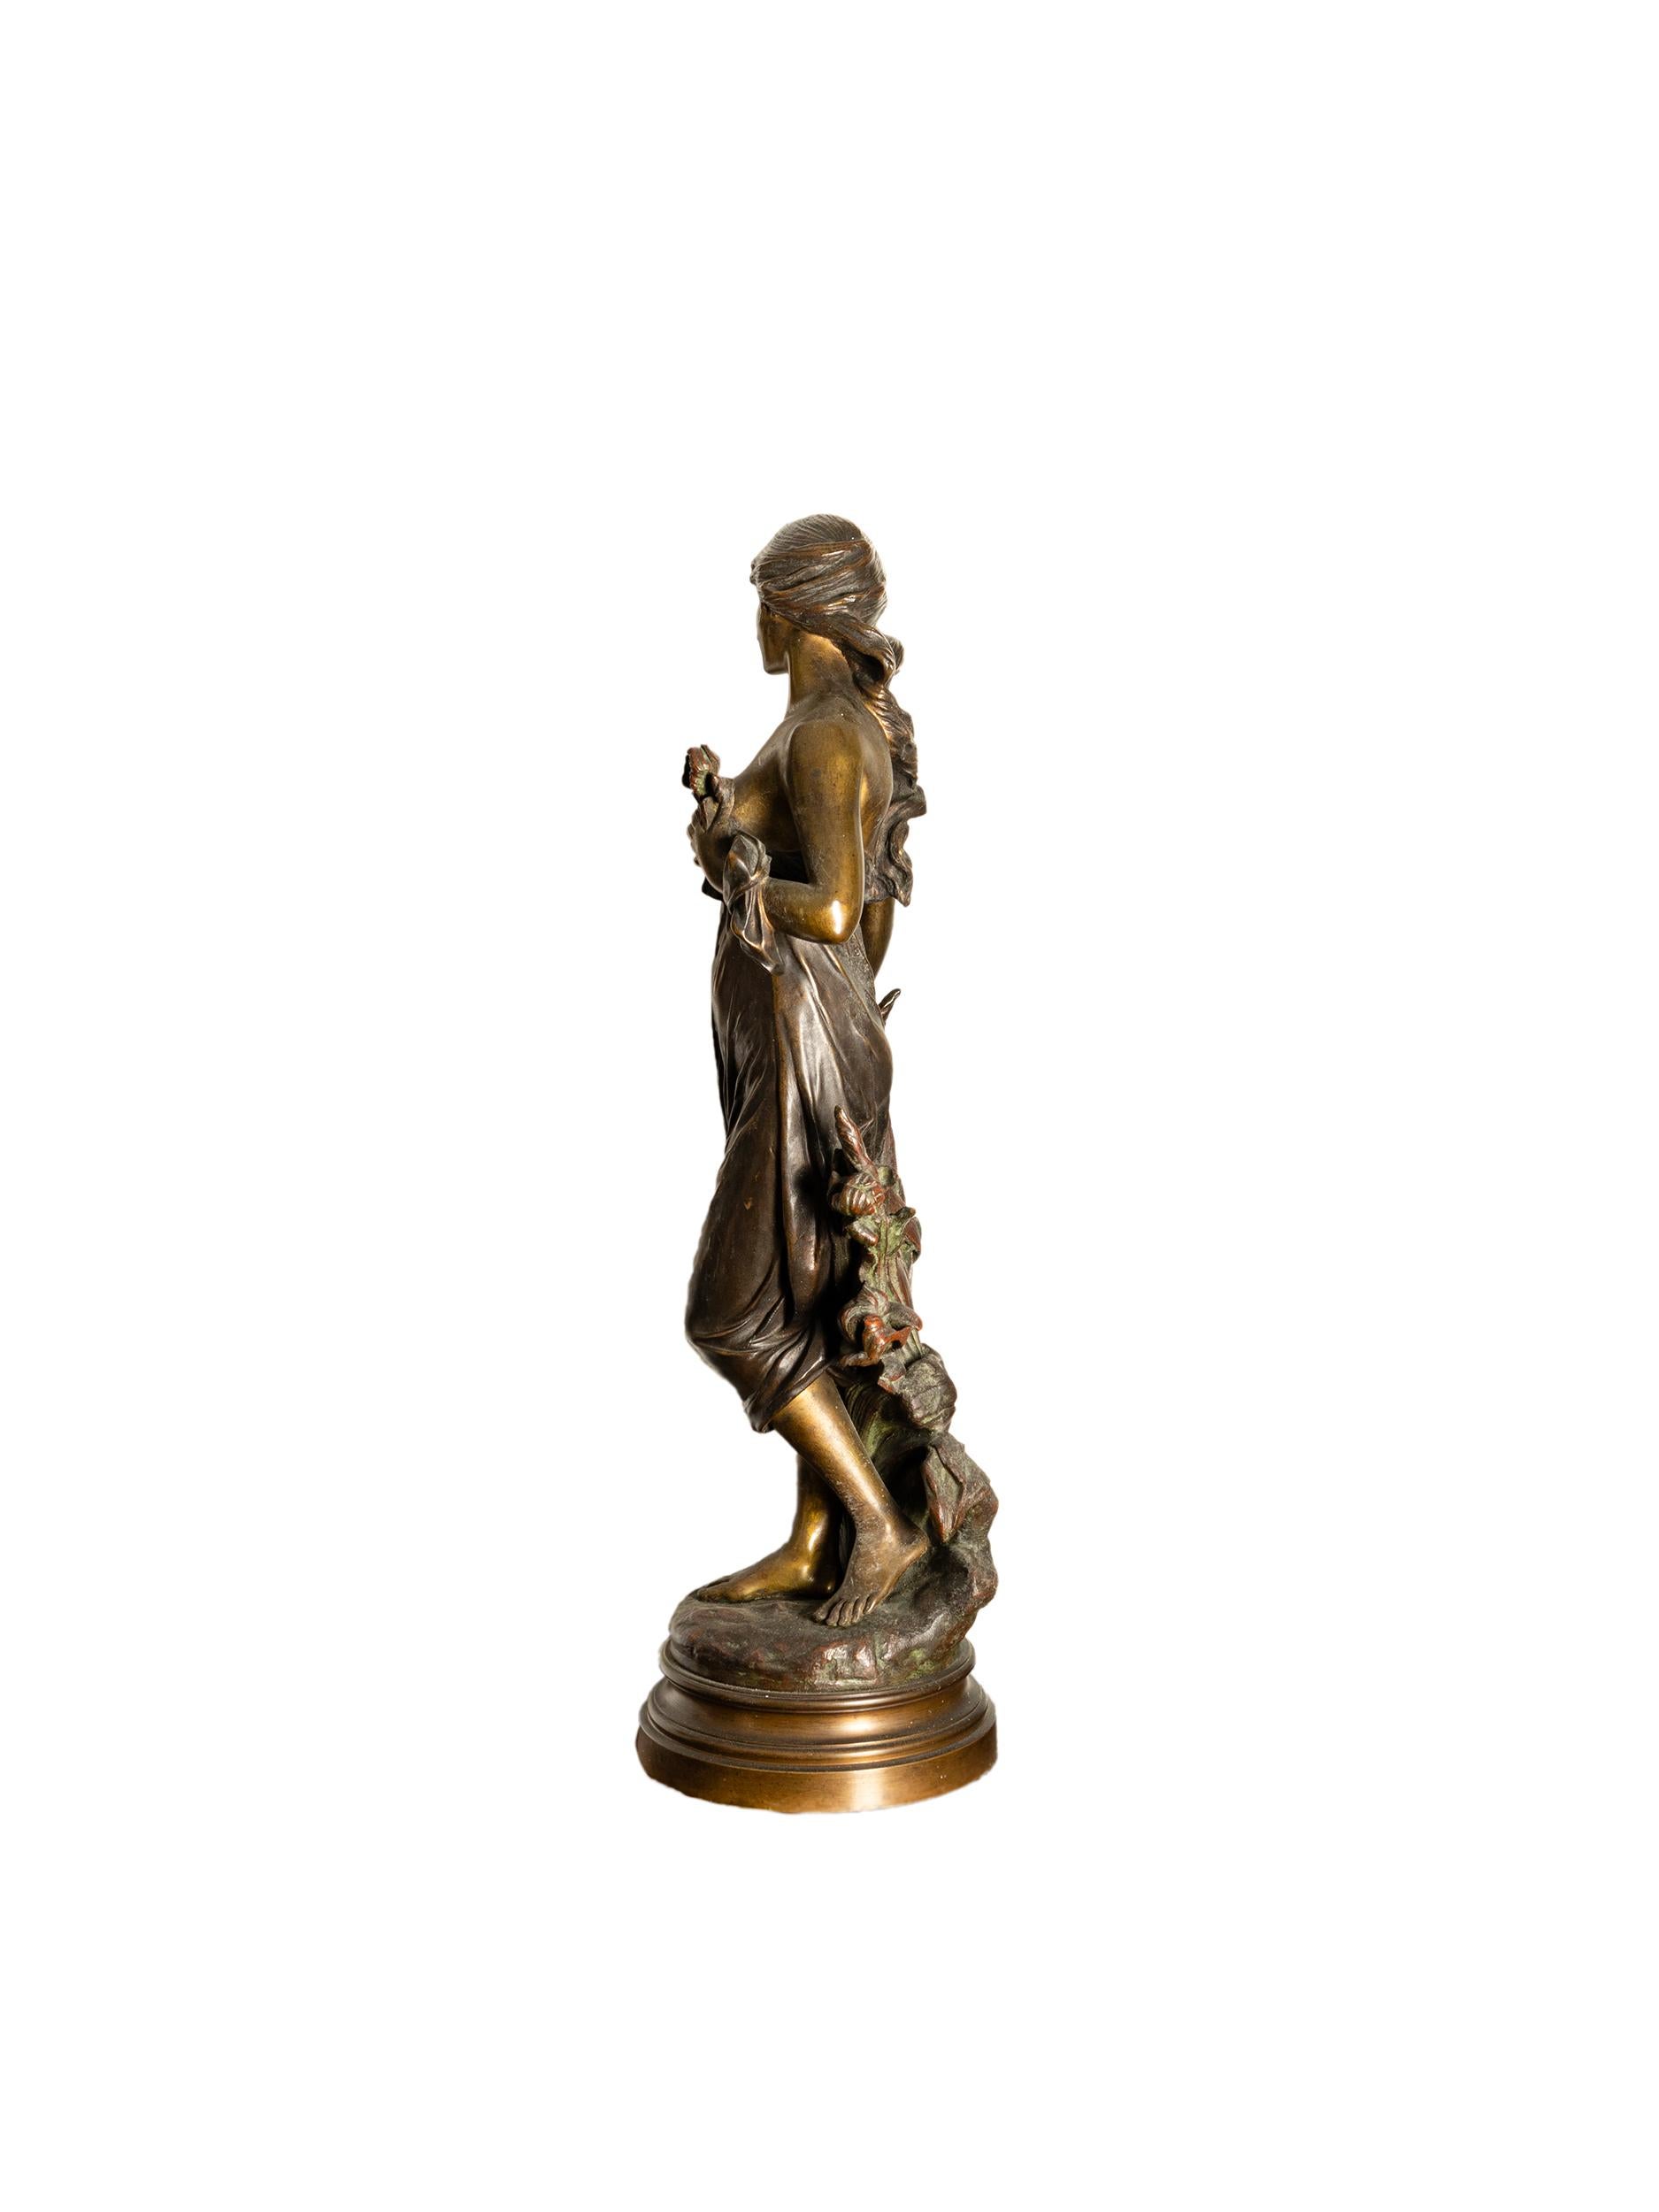 Eine patinierte Bronzefigur der römischen Jagdgöttin Diana von dem großen Künstler Edouard Drout.
